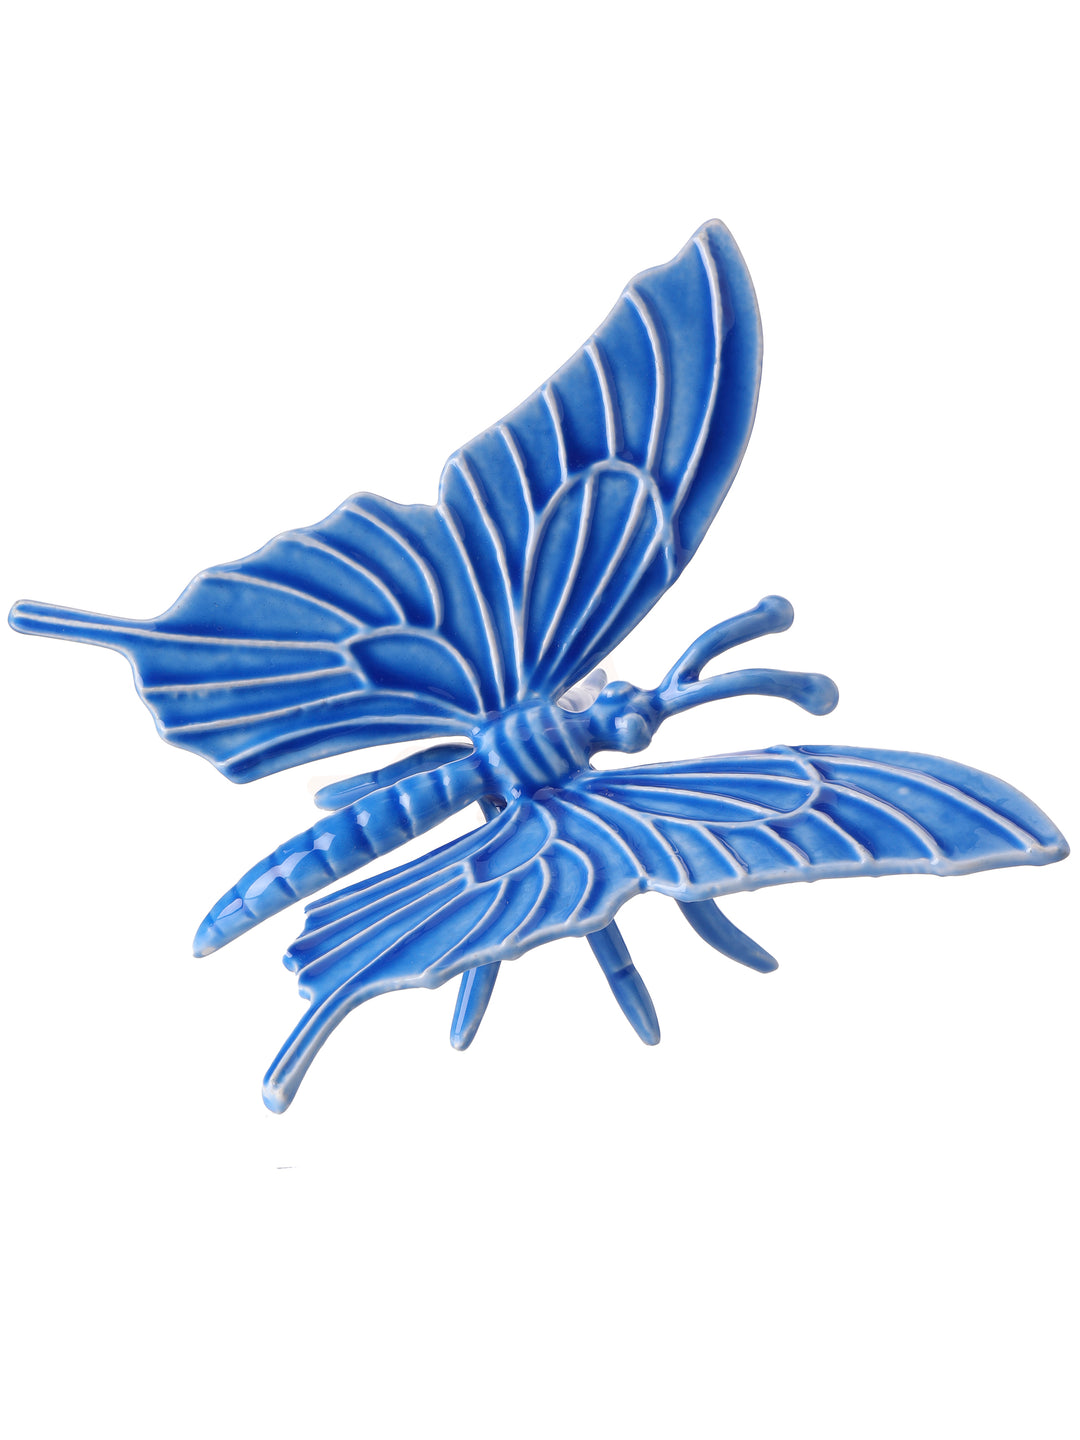 Regency 7.5" Aluminum Butterfly in Blue